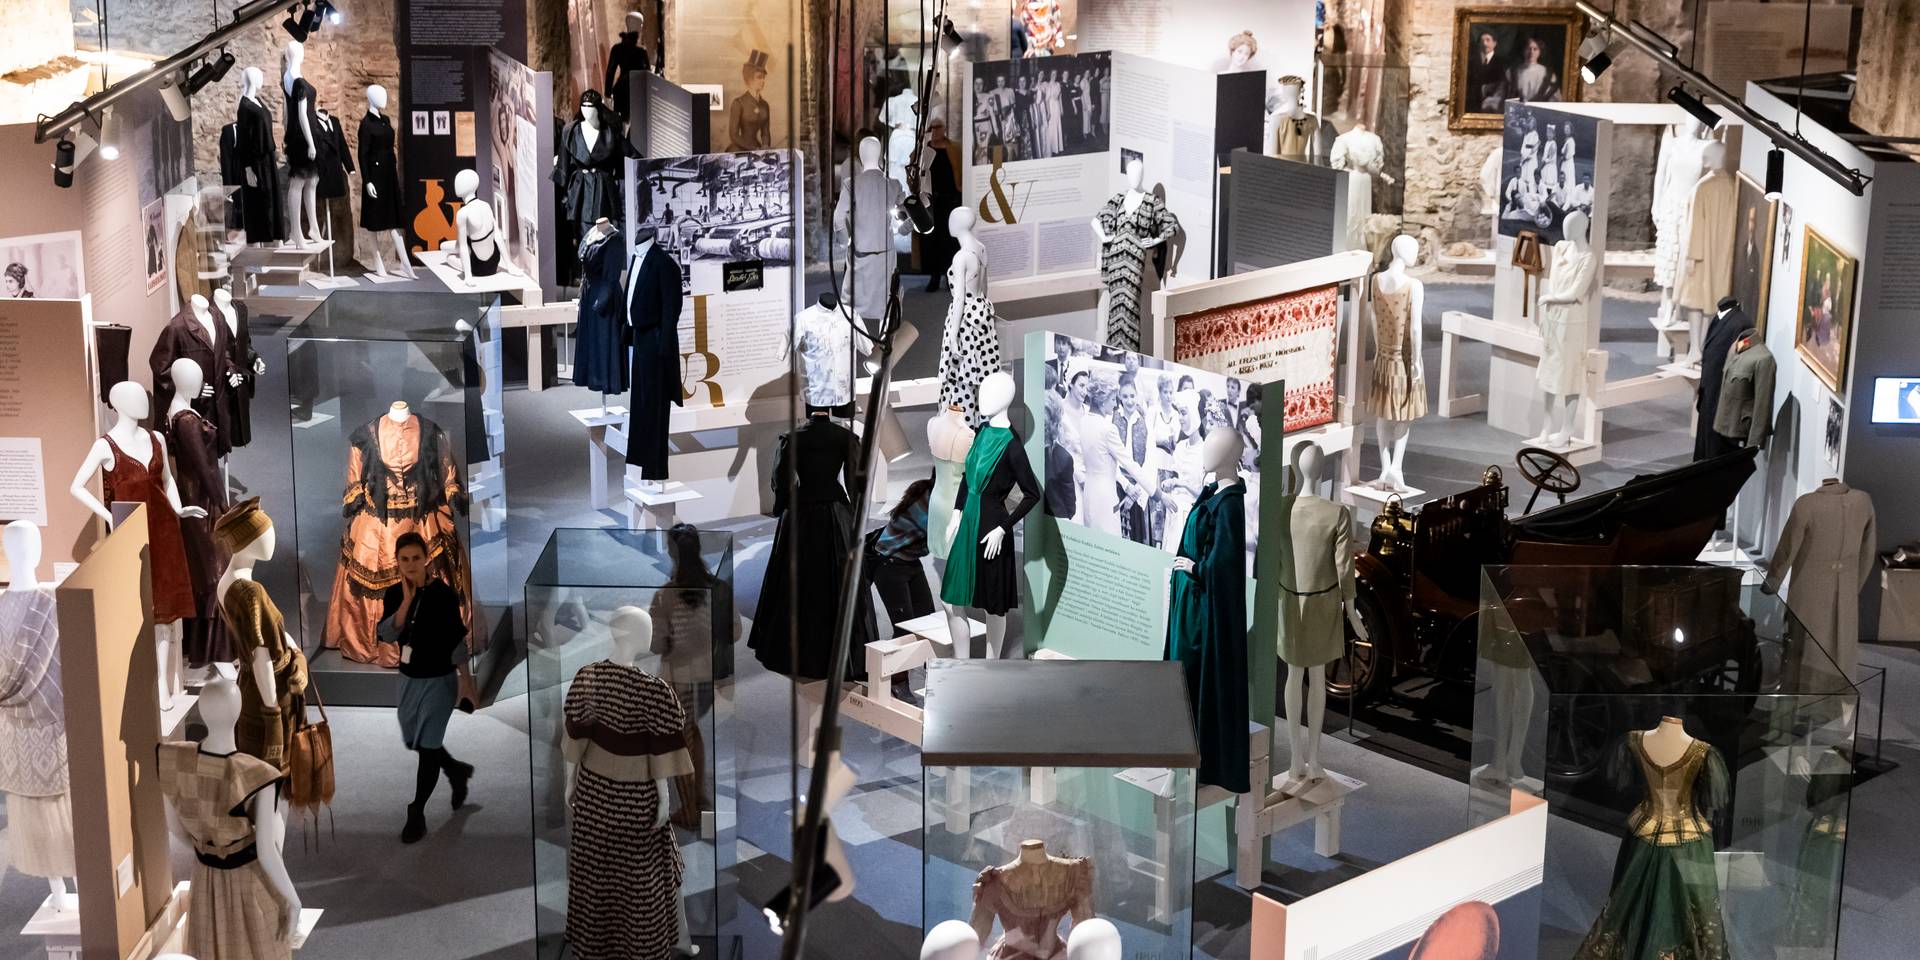 150 év, 120 öltözék – Nagyszabású divatkiállítással ünnepli a szülinapos fővárost a Kiscelli Múzeum